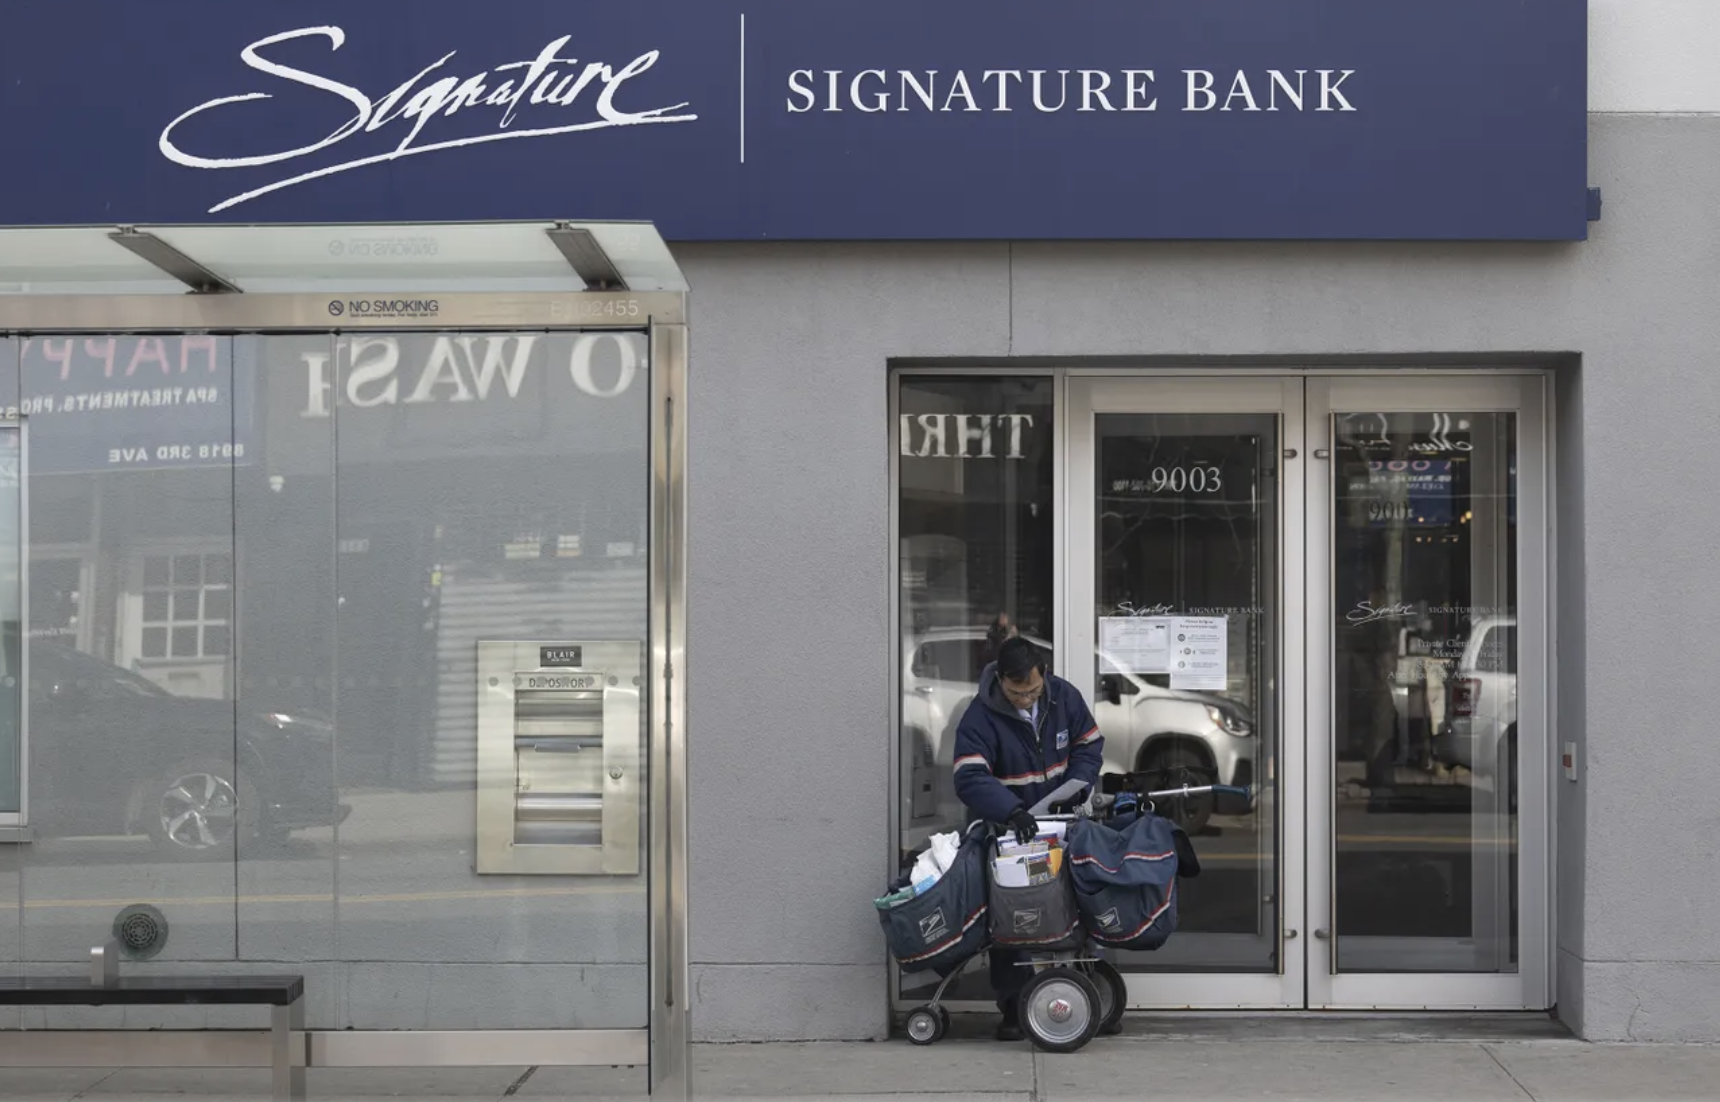 signature bank NYC